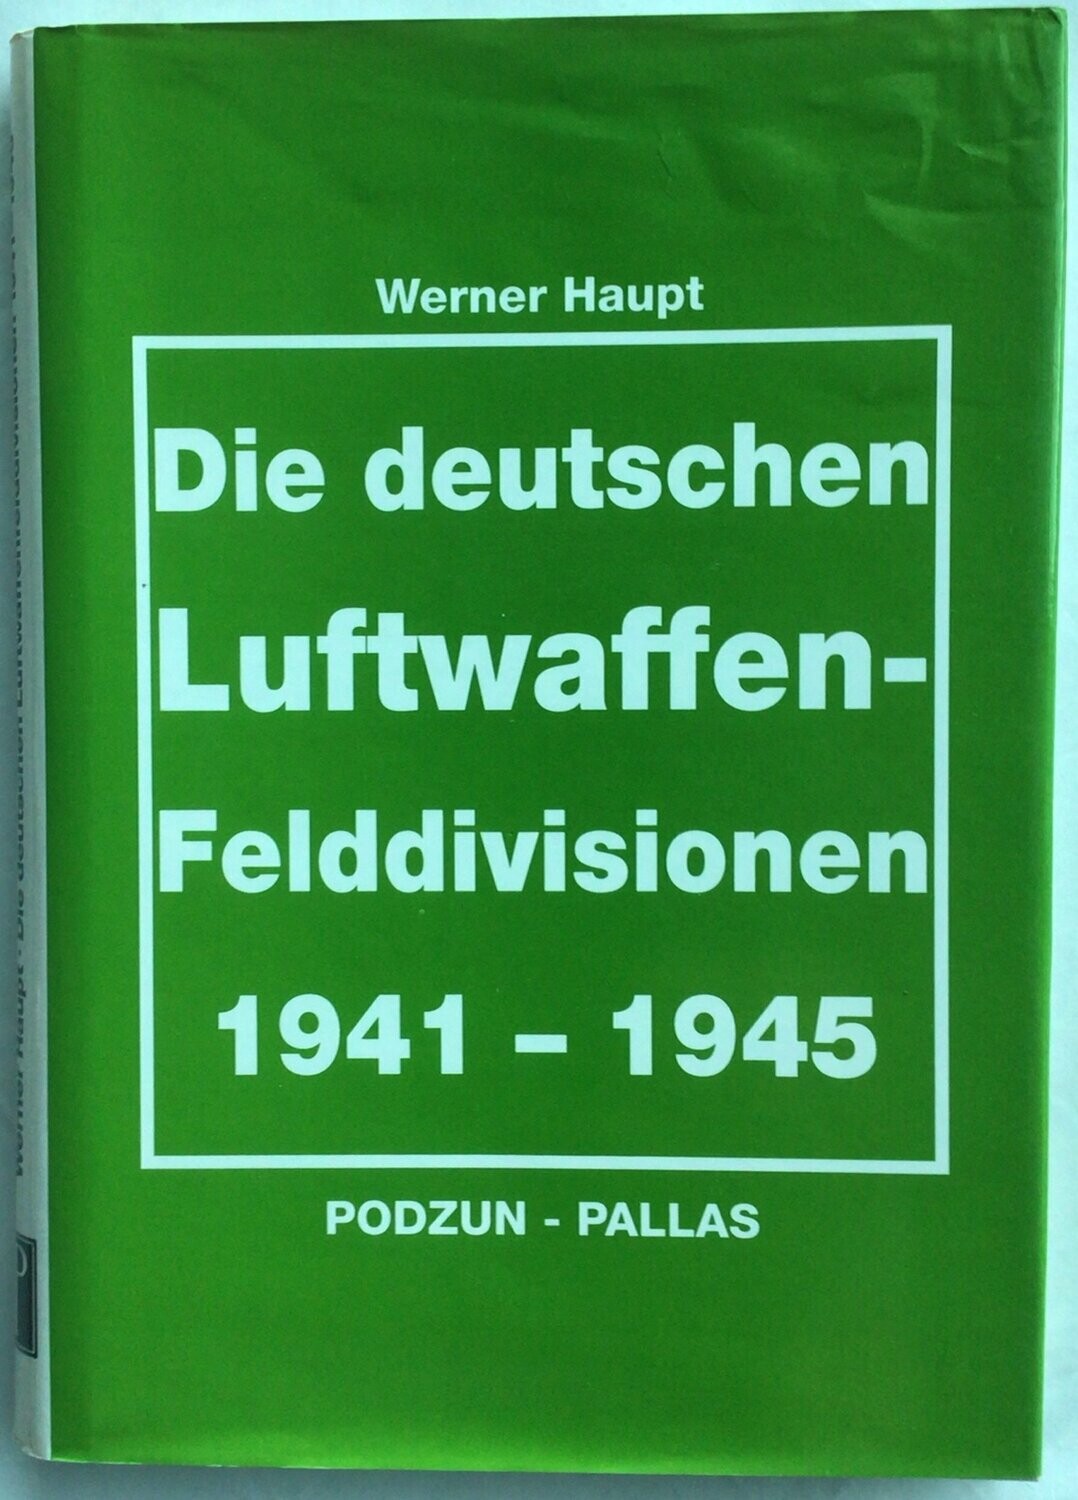 Die deutschen Luftwaffen-Felddivisionen
1941 - 1945